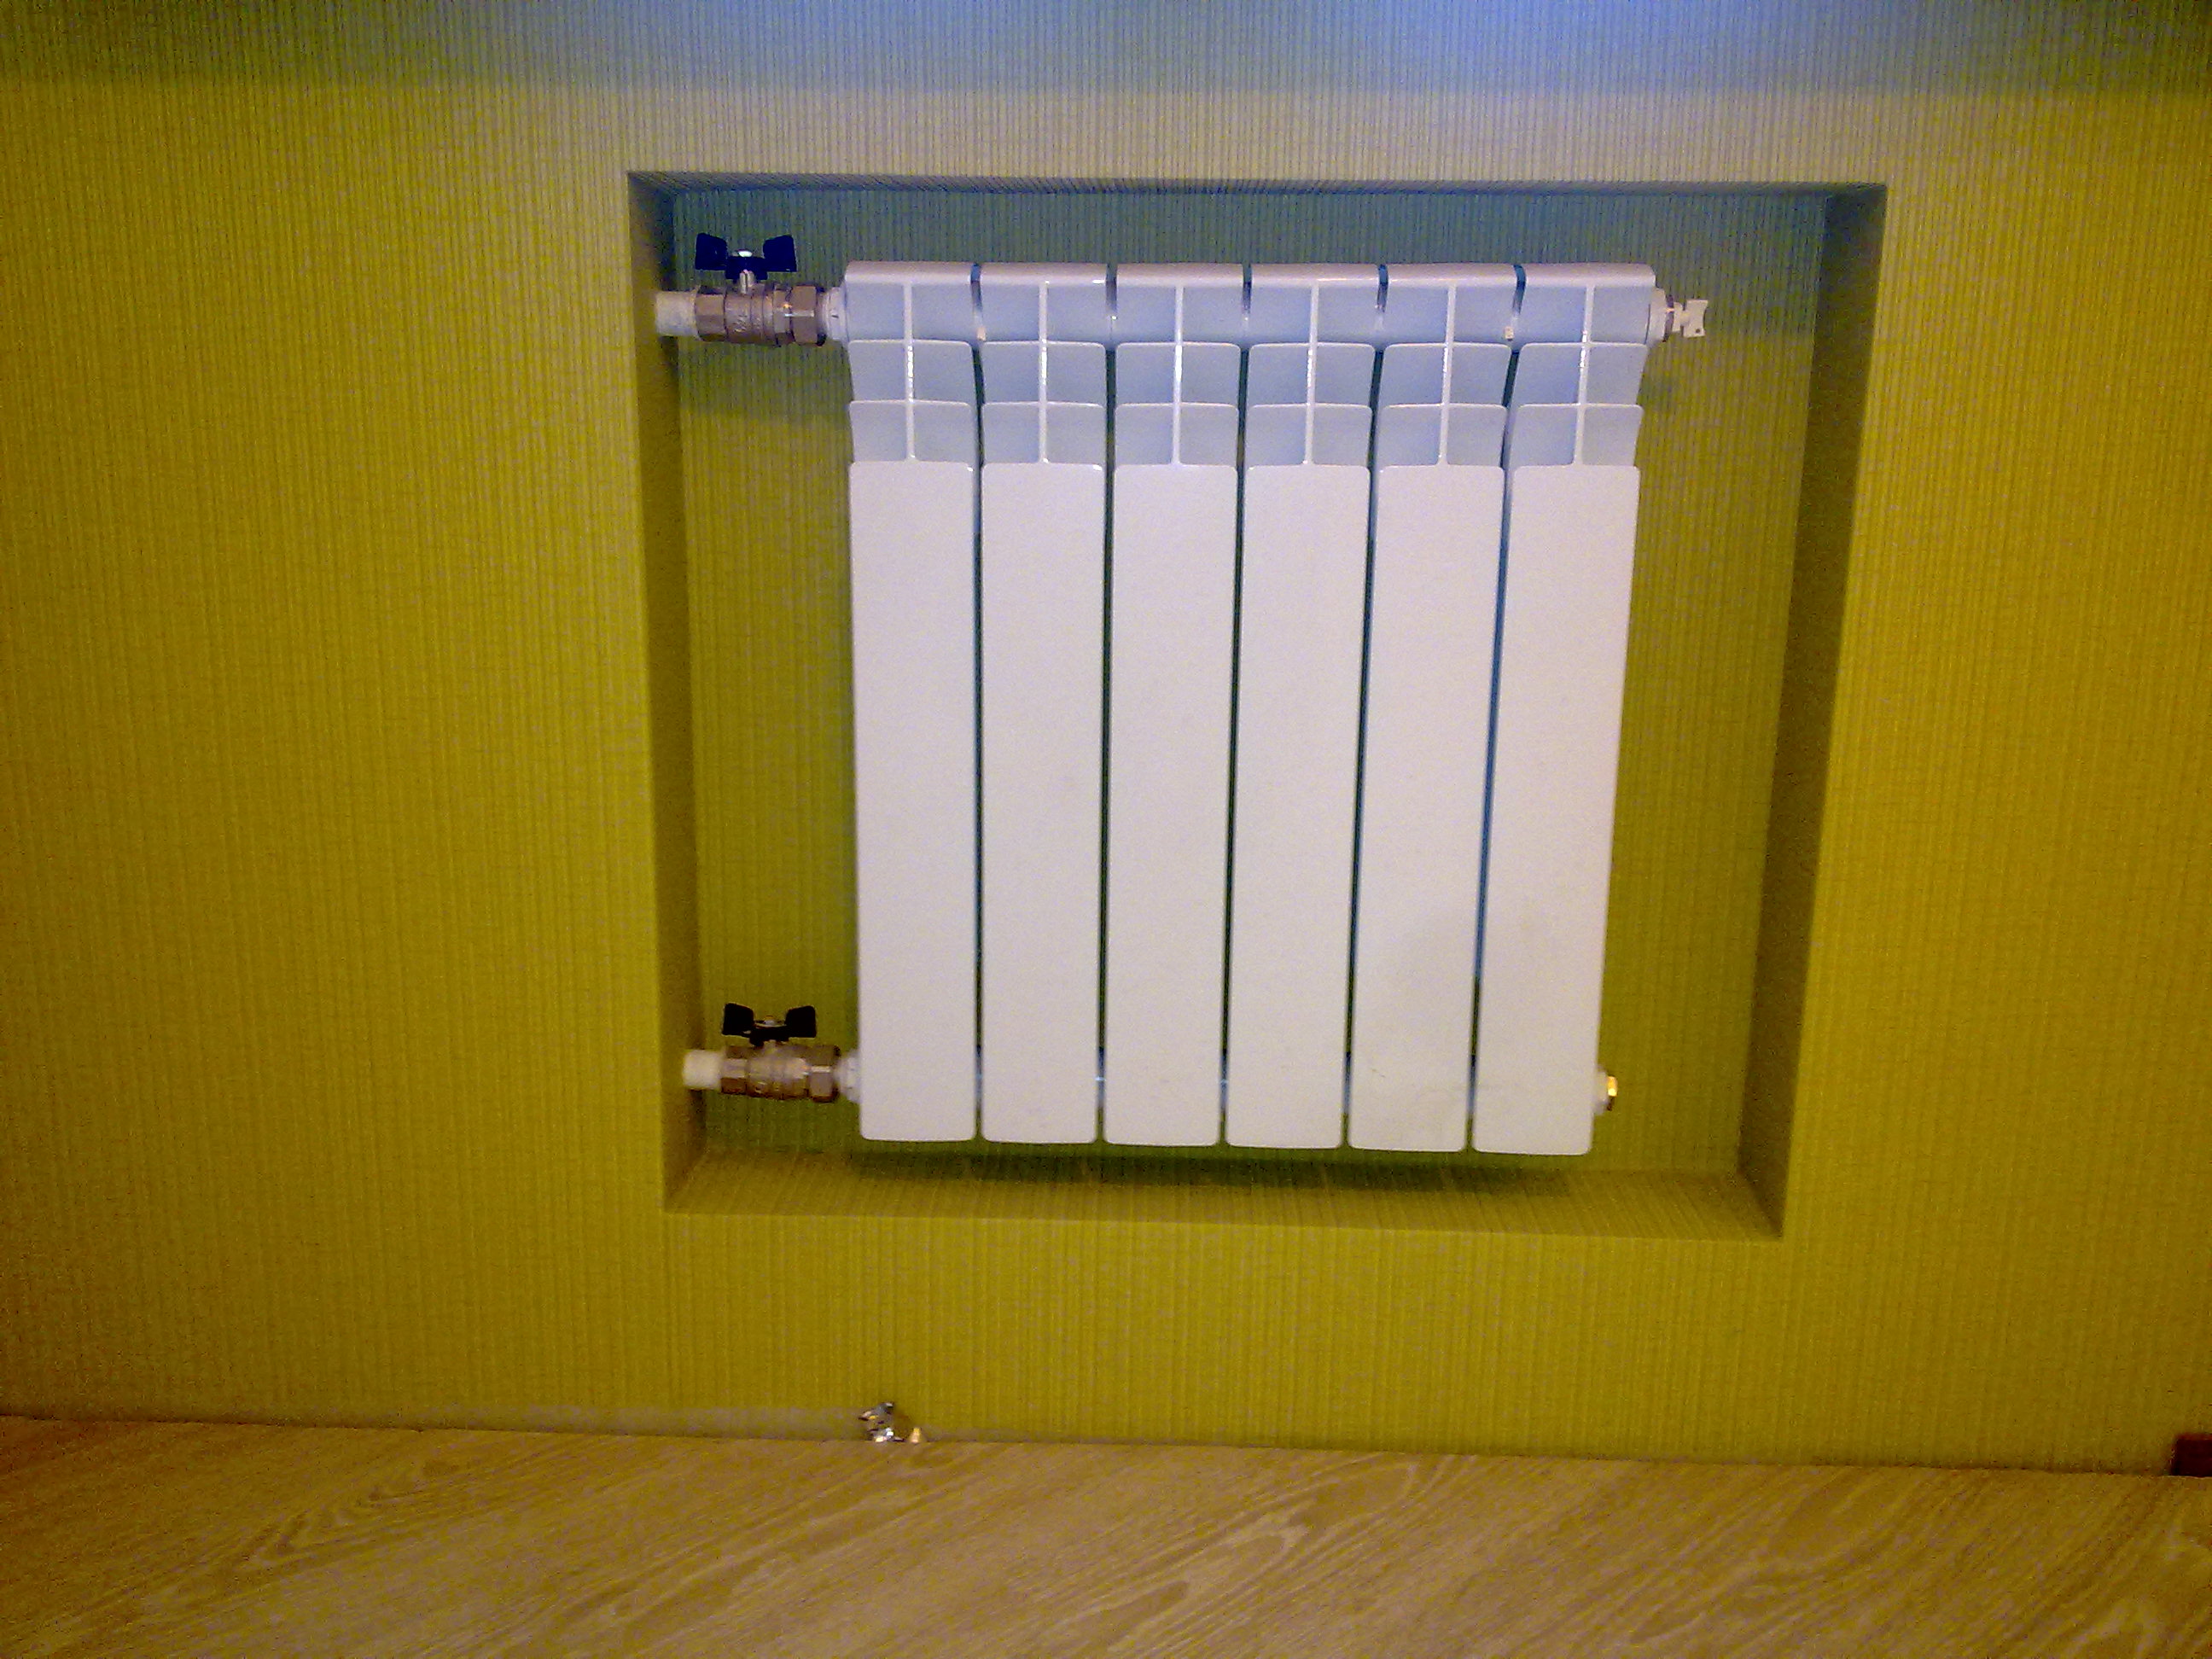 Встроенные аккумуляторы батареи. Радиатор отопления на стене. Батарея в стене. Ниша для радиатора отопления. Радиатор отопления в нише.